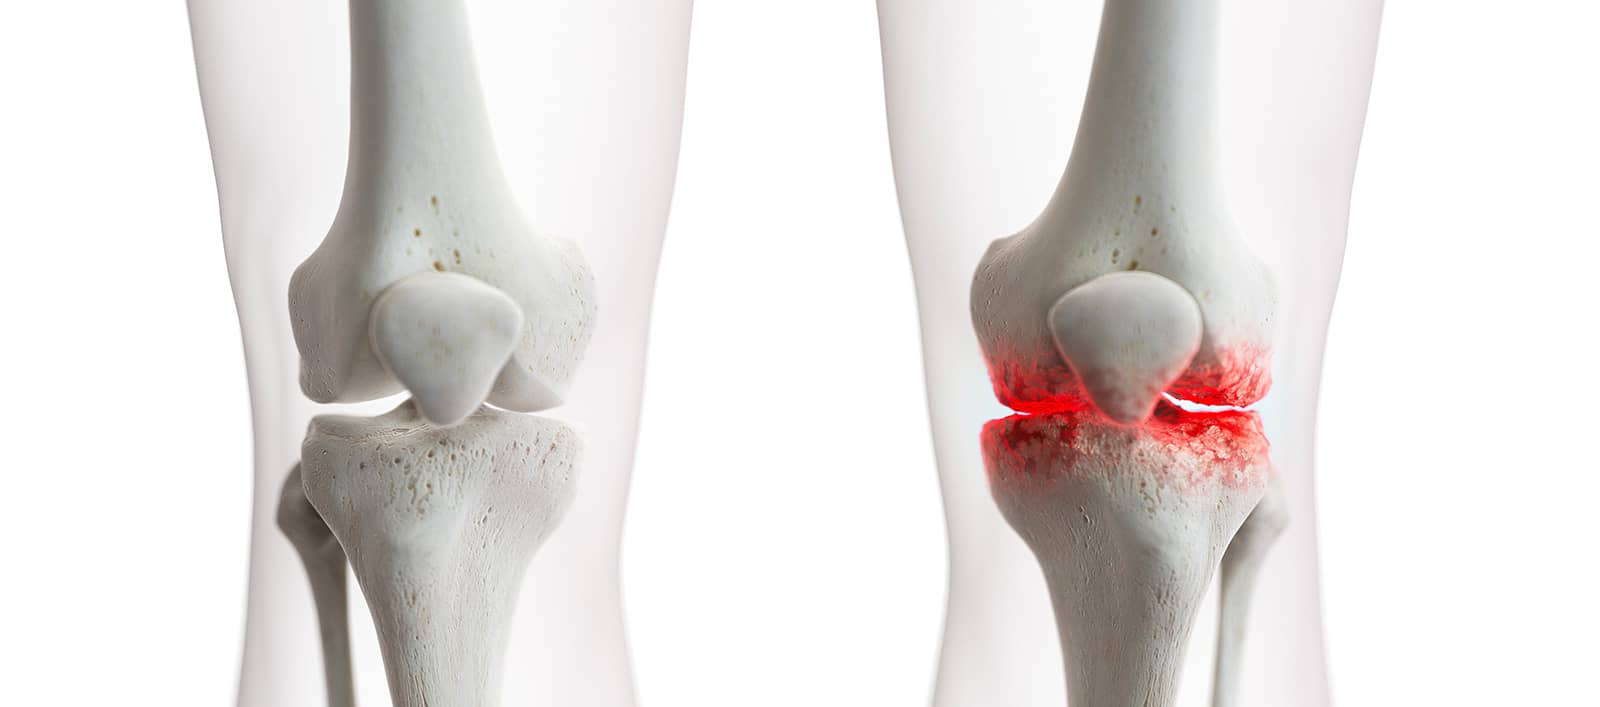 Comment savoir si on a un problème au genou ? | Dr Paillard